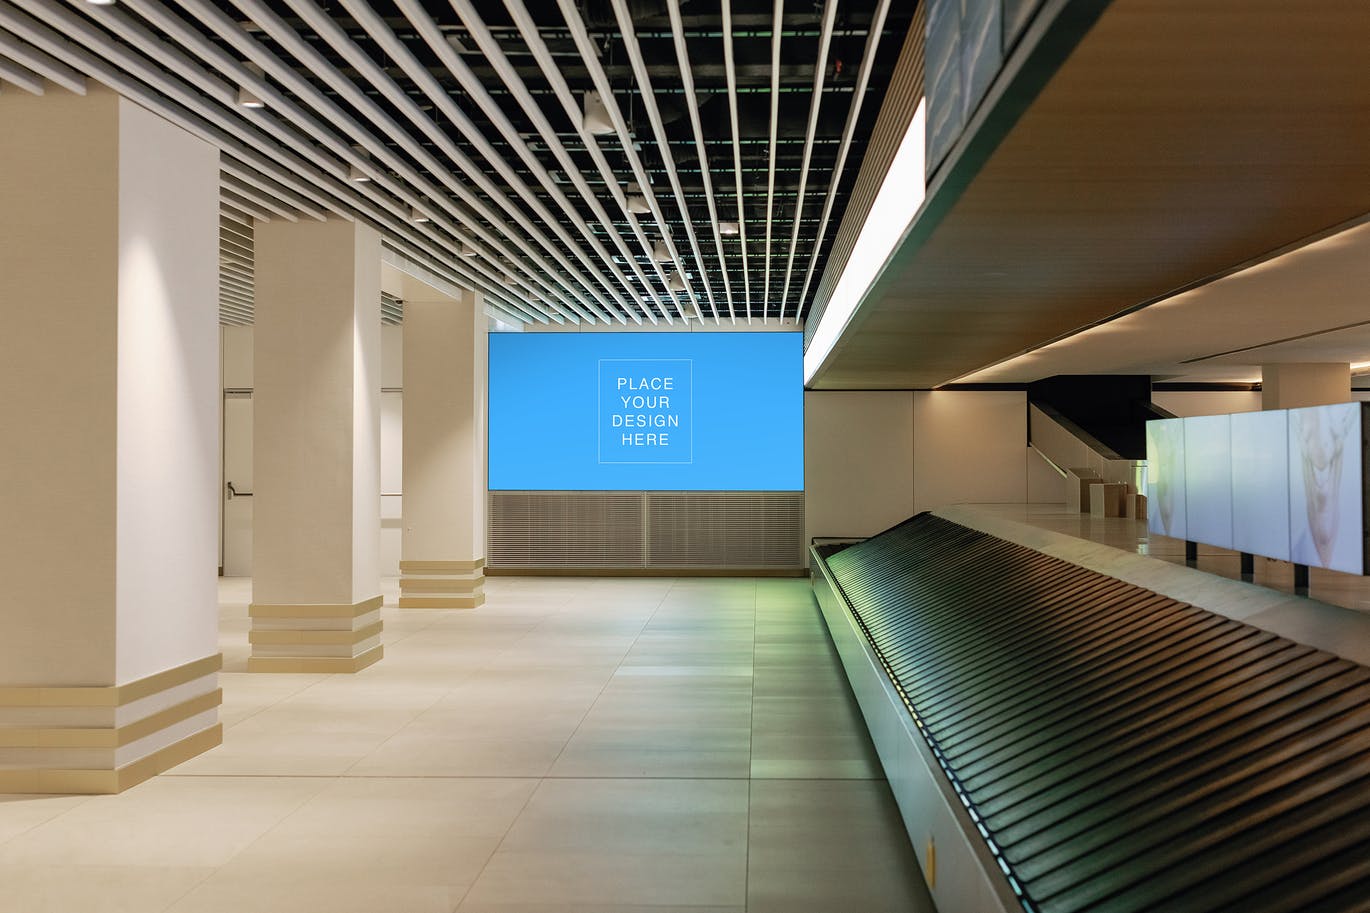 机场屏幕广告展示样机模板 (PSD)